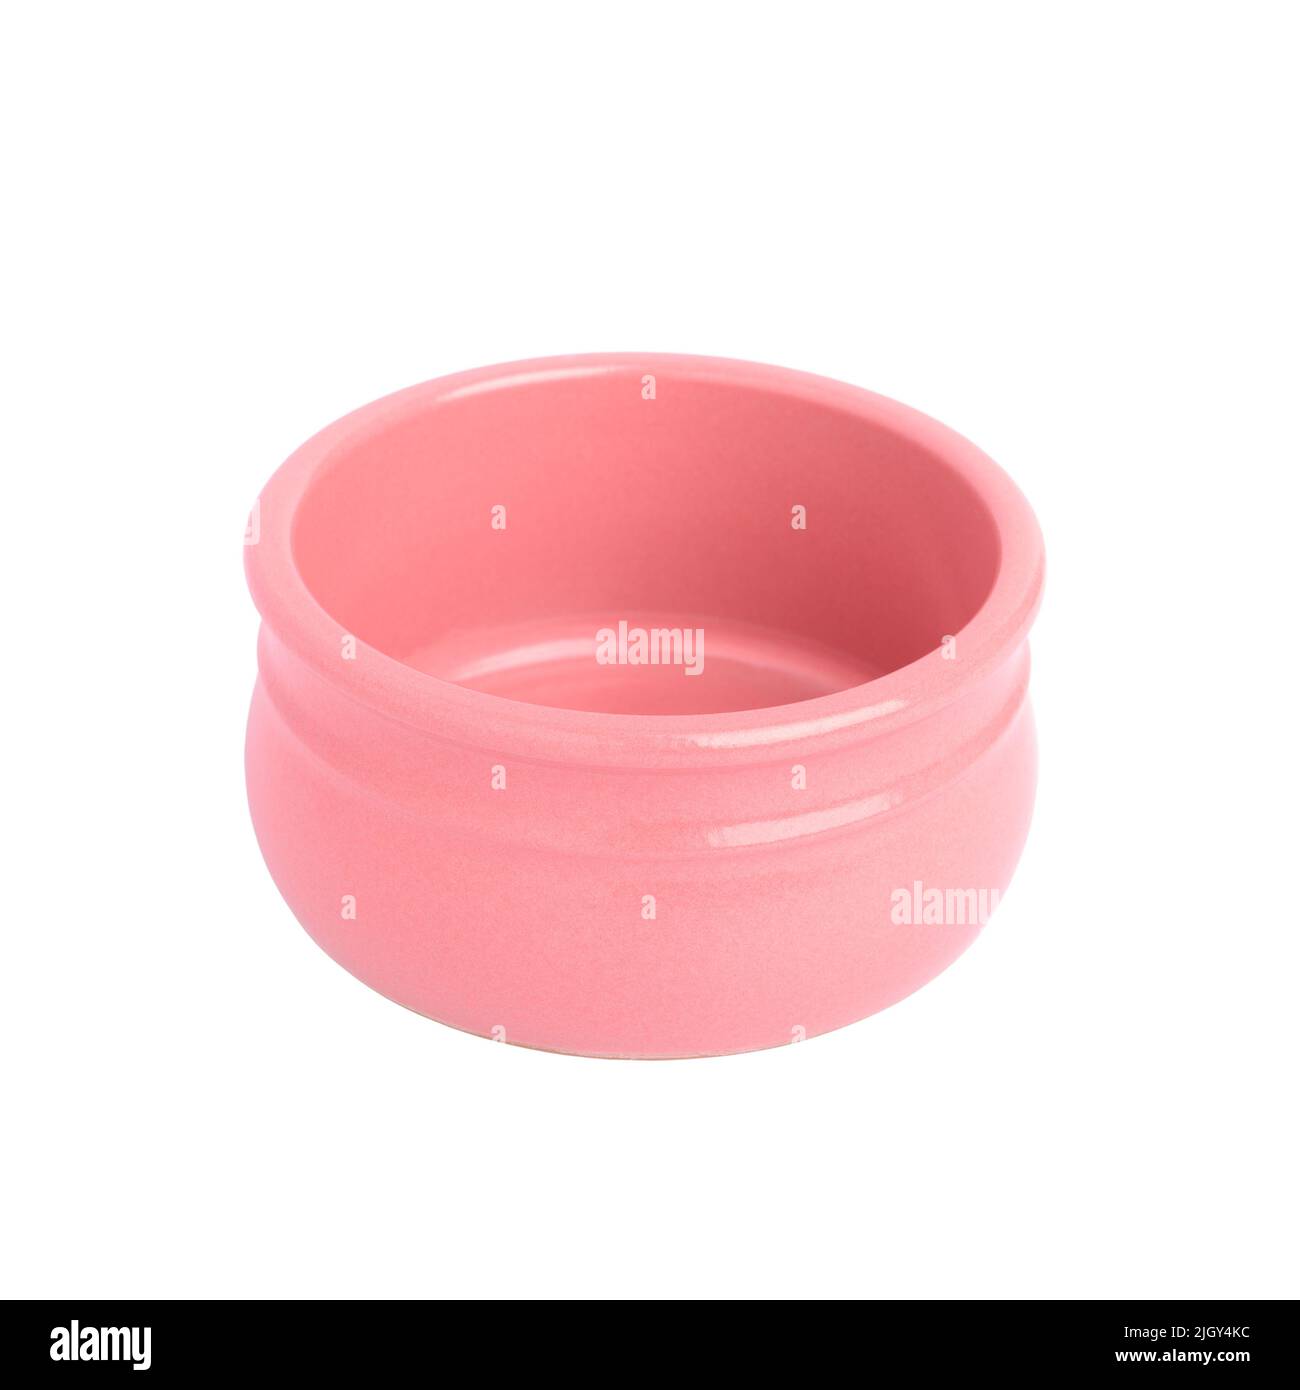 Recipiente de cerámica rosa vacío aislado sobre fondo blanco primer plano, poca profundidad de campo Foto de stock